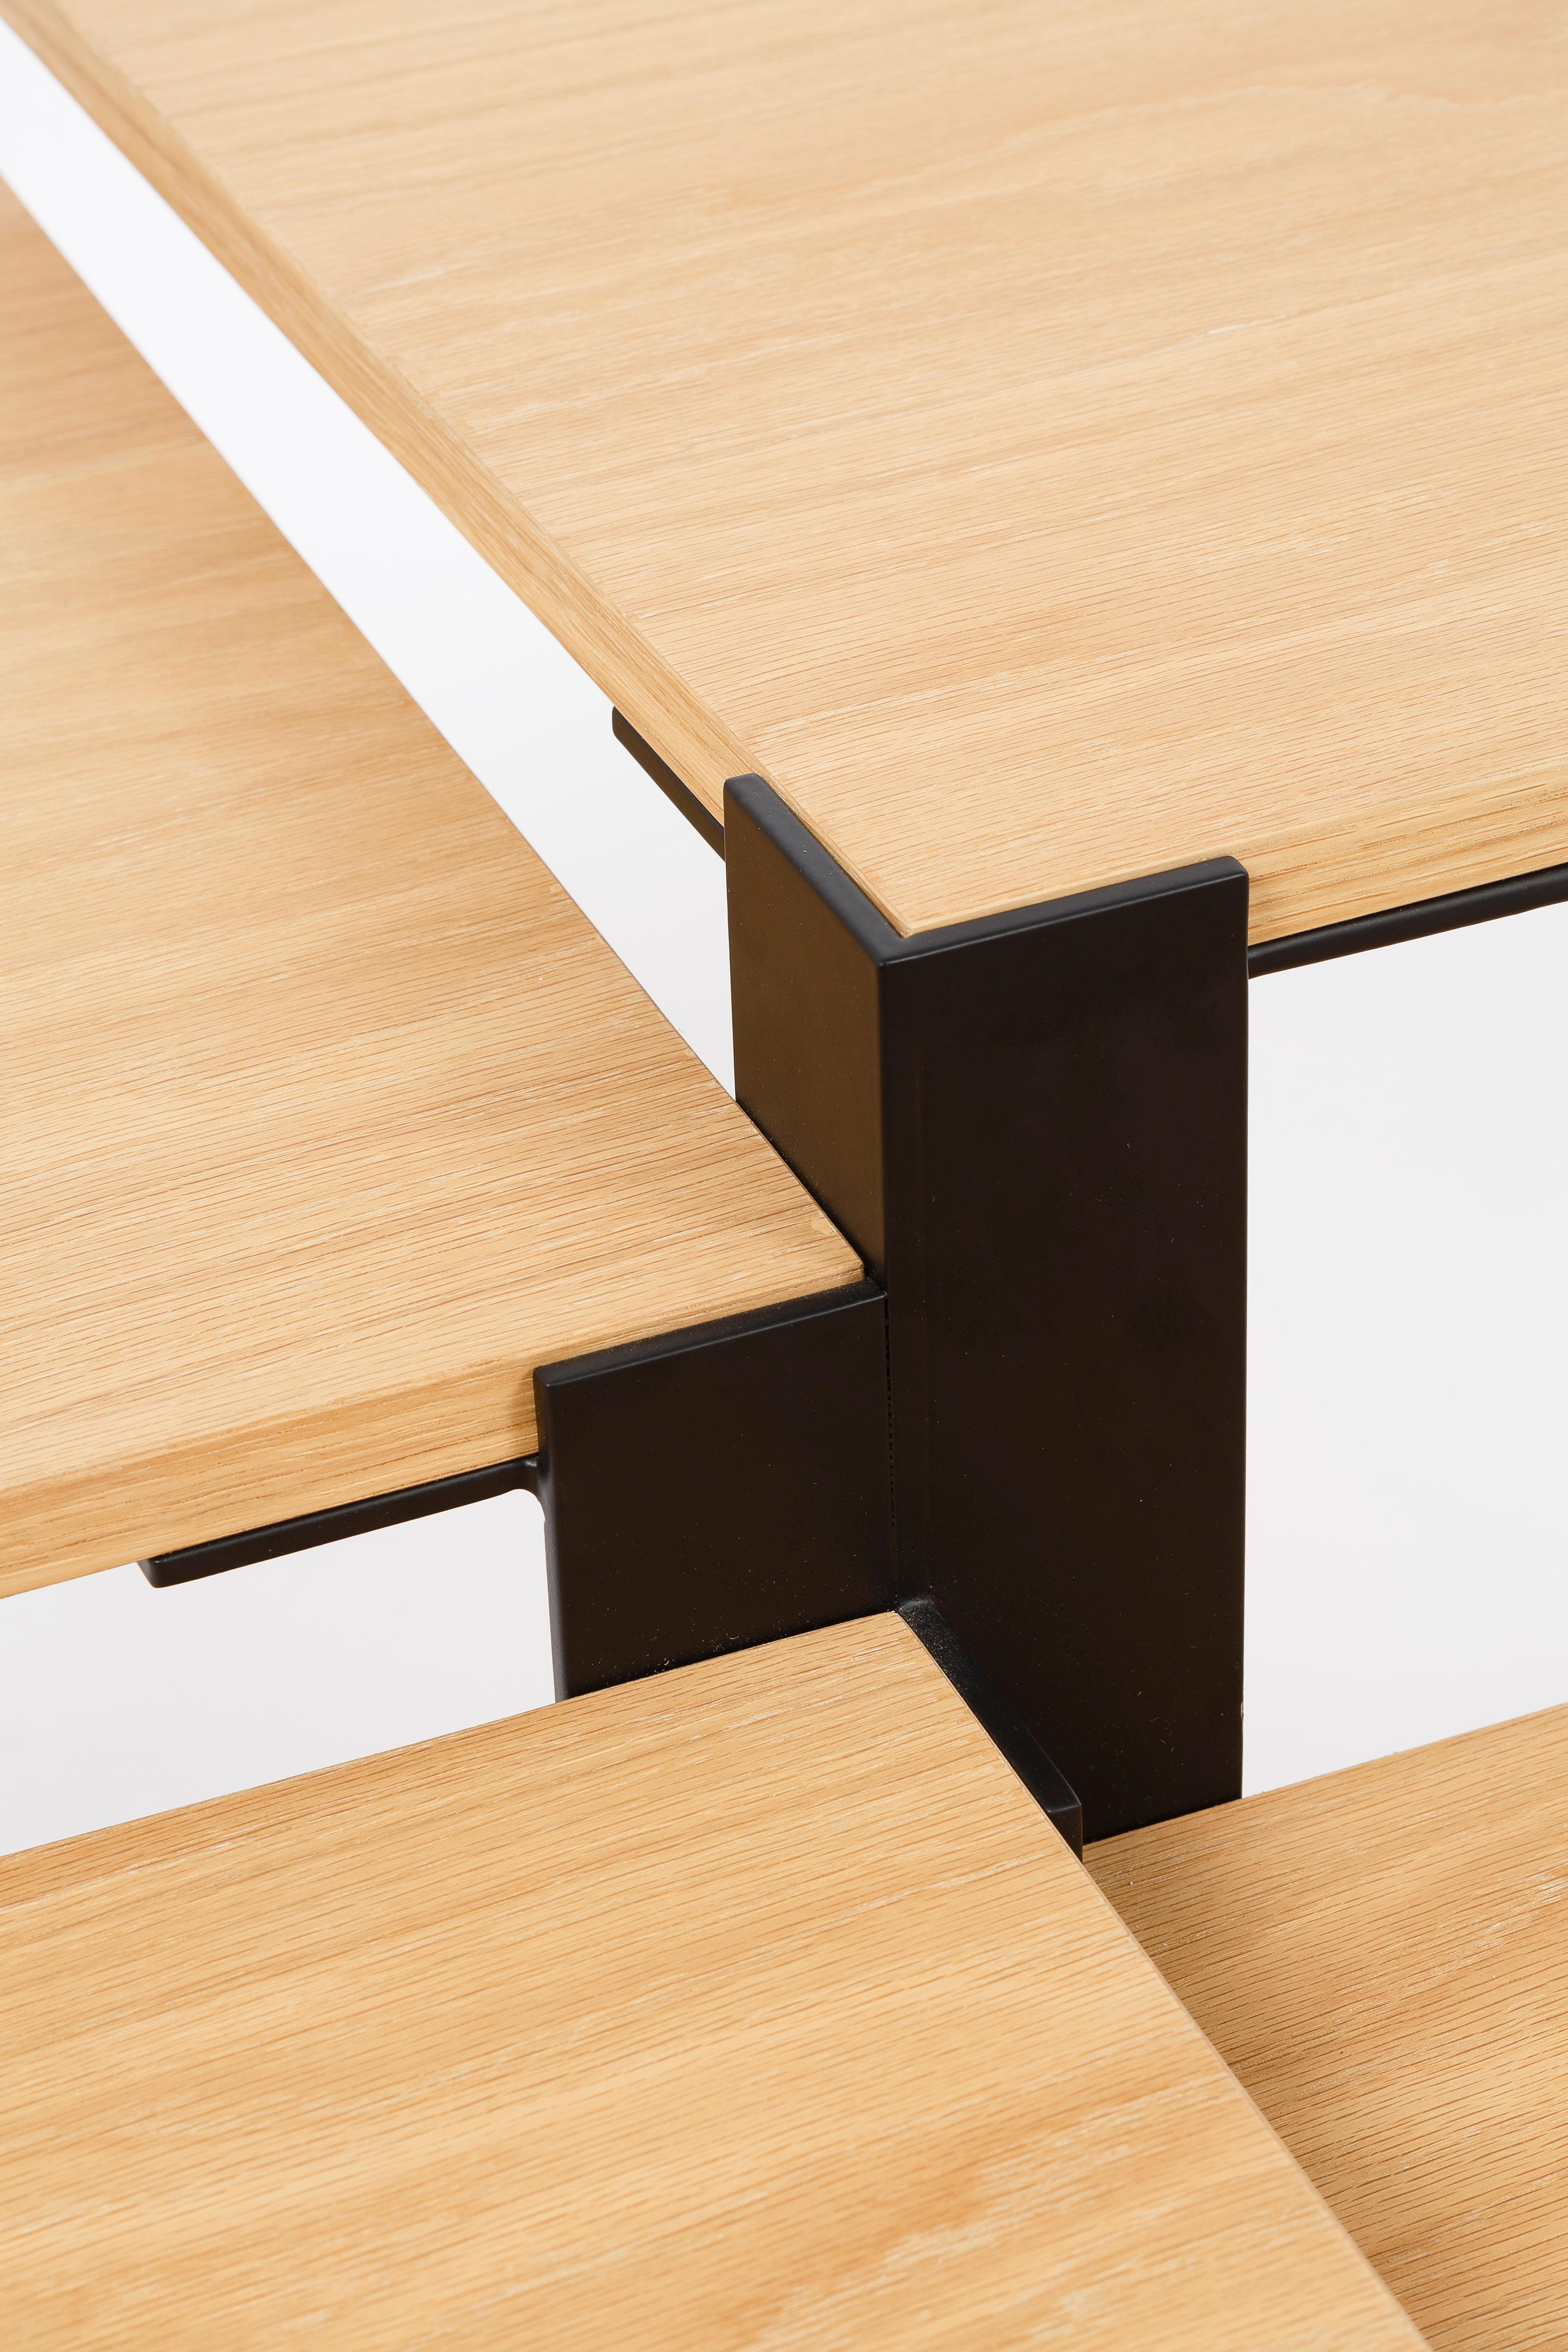 Comme des pétales de bois sur une tige métallique, les panneaux de la table basse Mayet sont reliés à une poutre centrale en acier. Ils descendent en cascade par tranches de 25 mm, dessinant une spirale dans l'air. Lorsque l'on change de point de